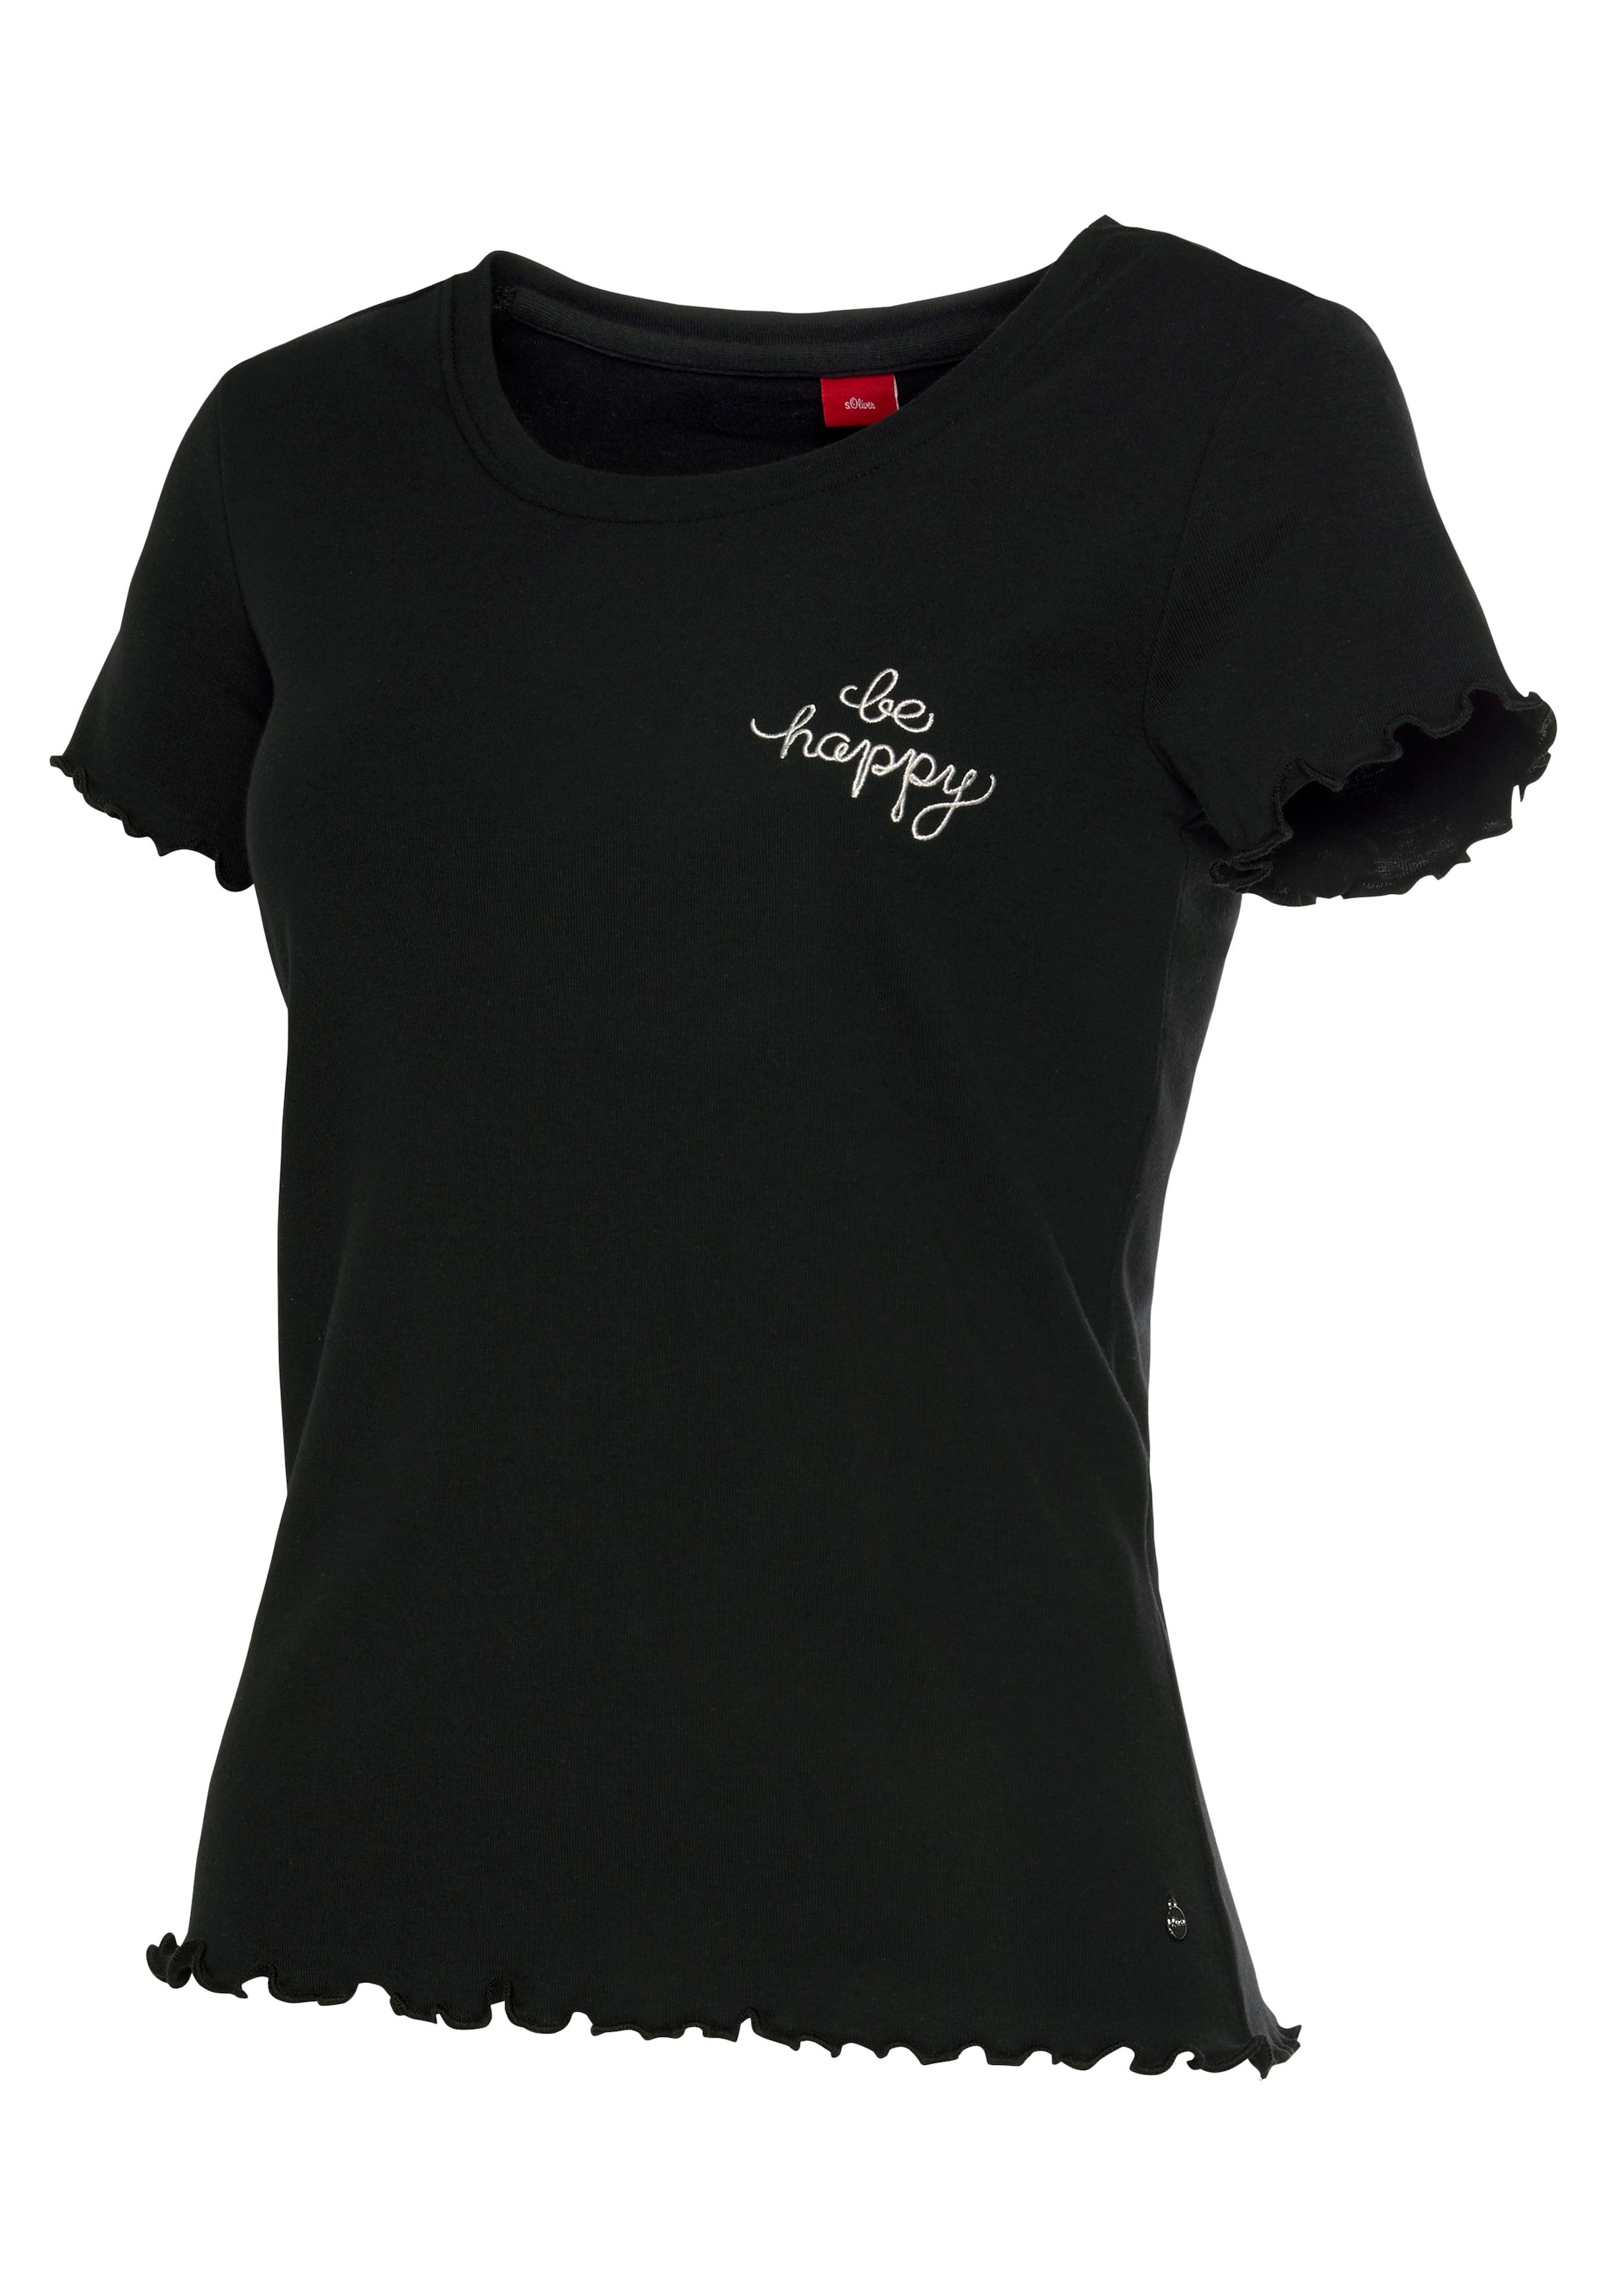 s.Oliver T-Shirt, Lingerie Unterwäsche Kräuselsaum LASCANA kaufen » mit Bademode, online | 